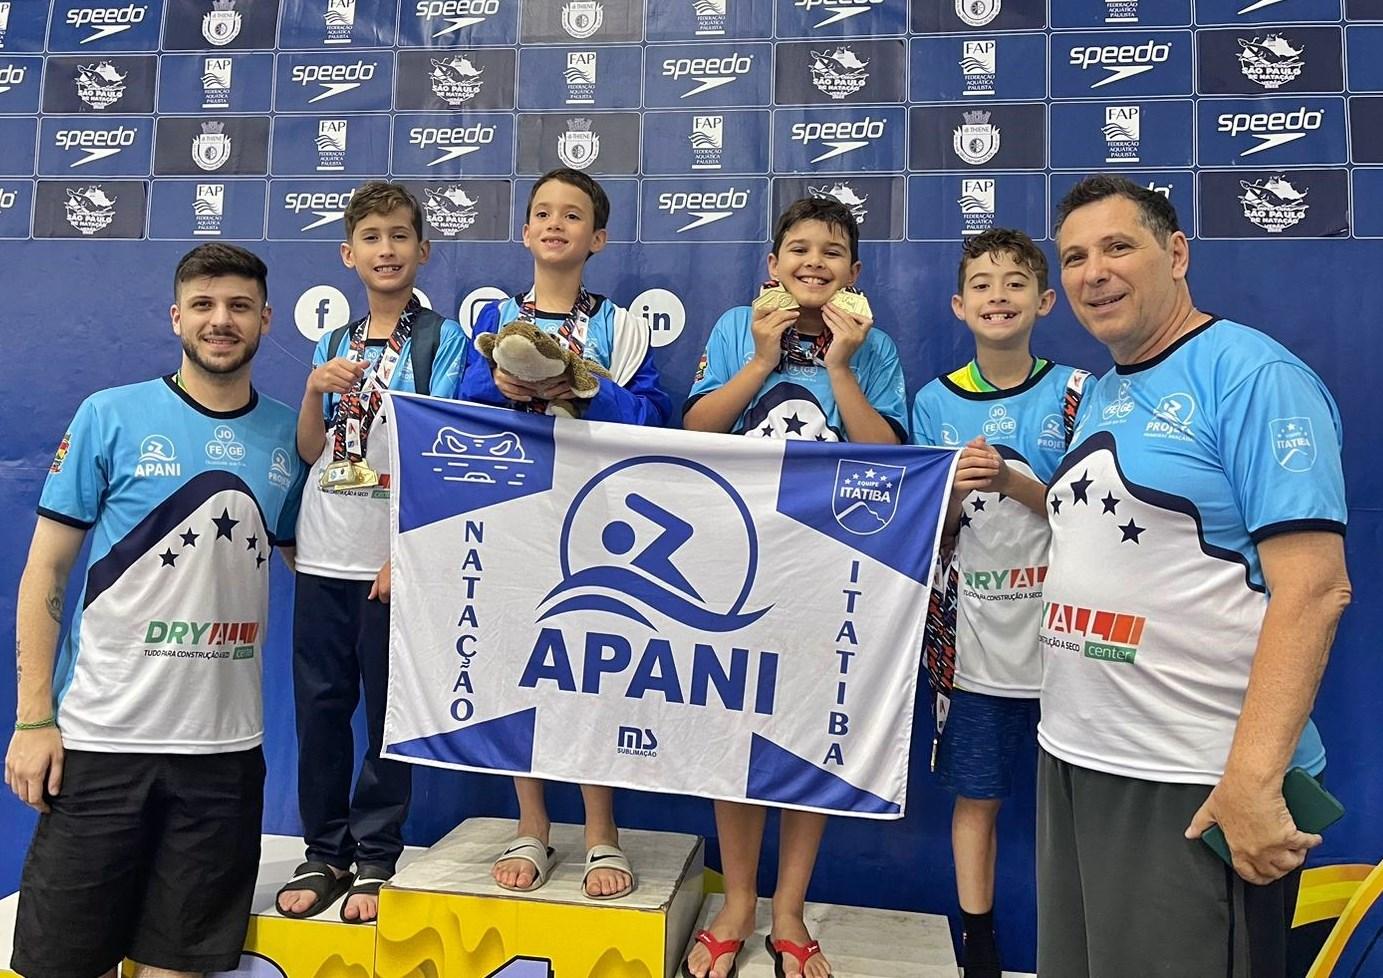 Nadadores da Apan Itatibense conquistam bons resultados na Super Copa SP